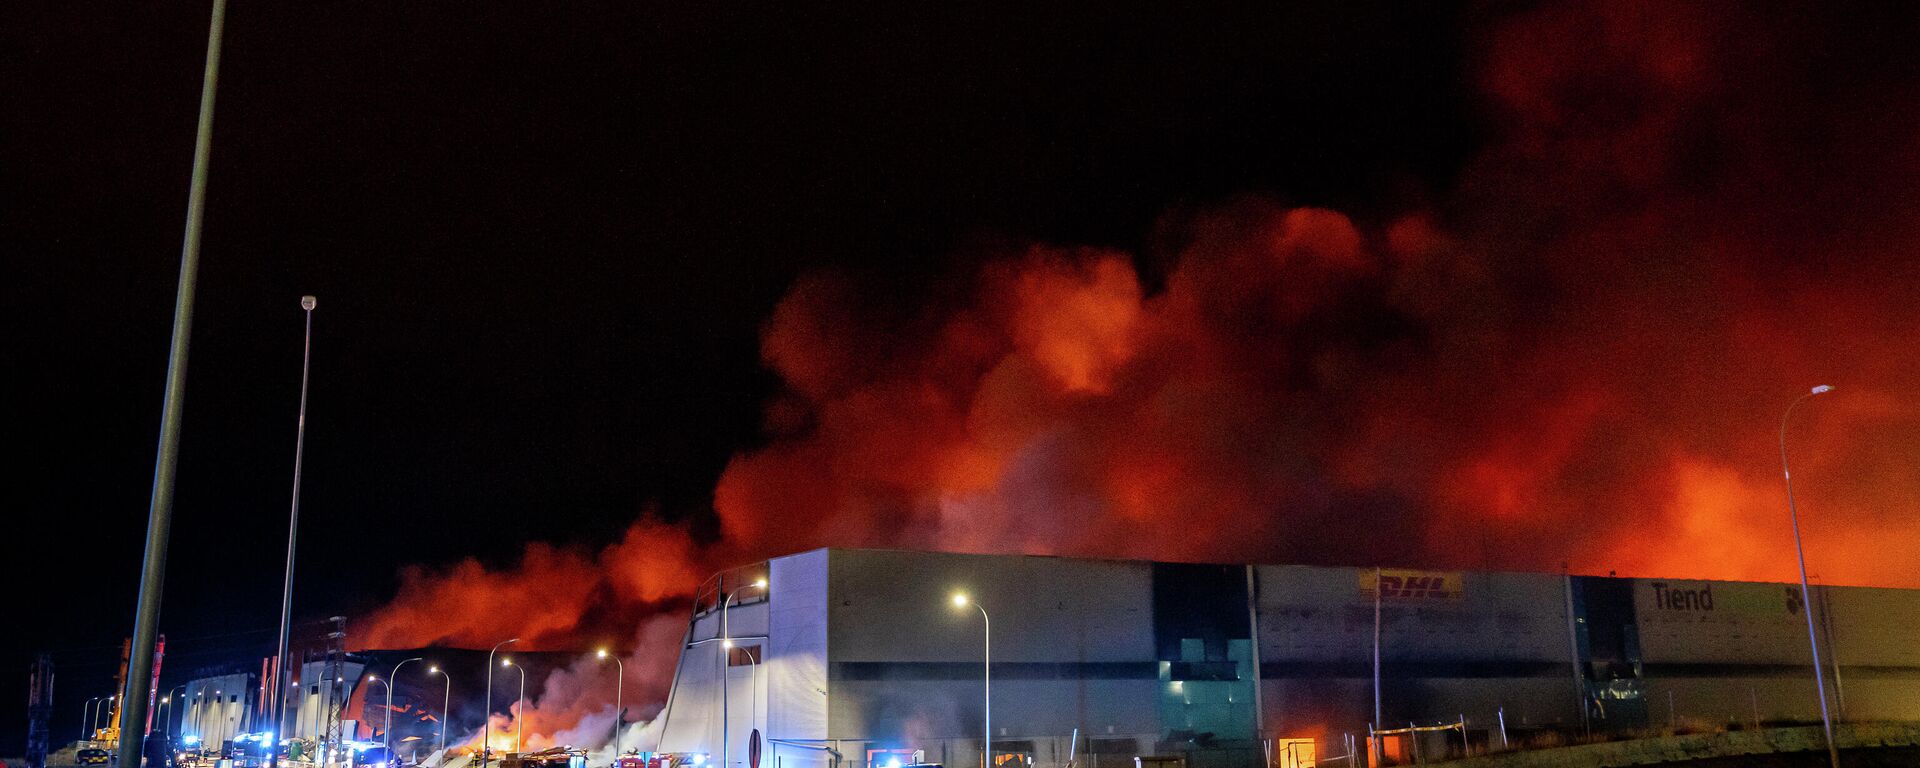 Incendio de un edificio industrial en Seseña Nuevo (Toledo).  - Sputnik Mundo, 1920, 14.04.2021